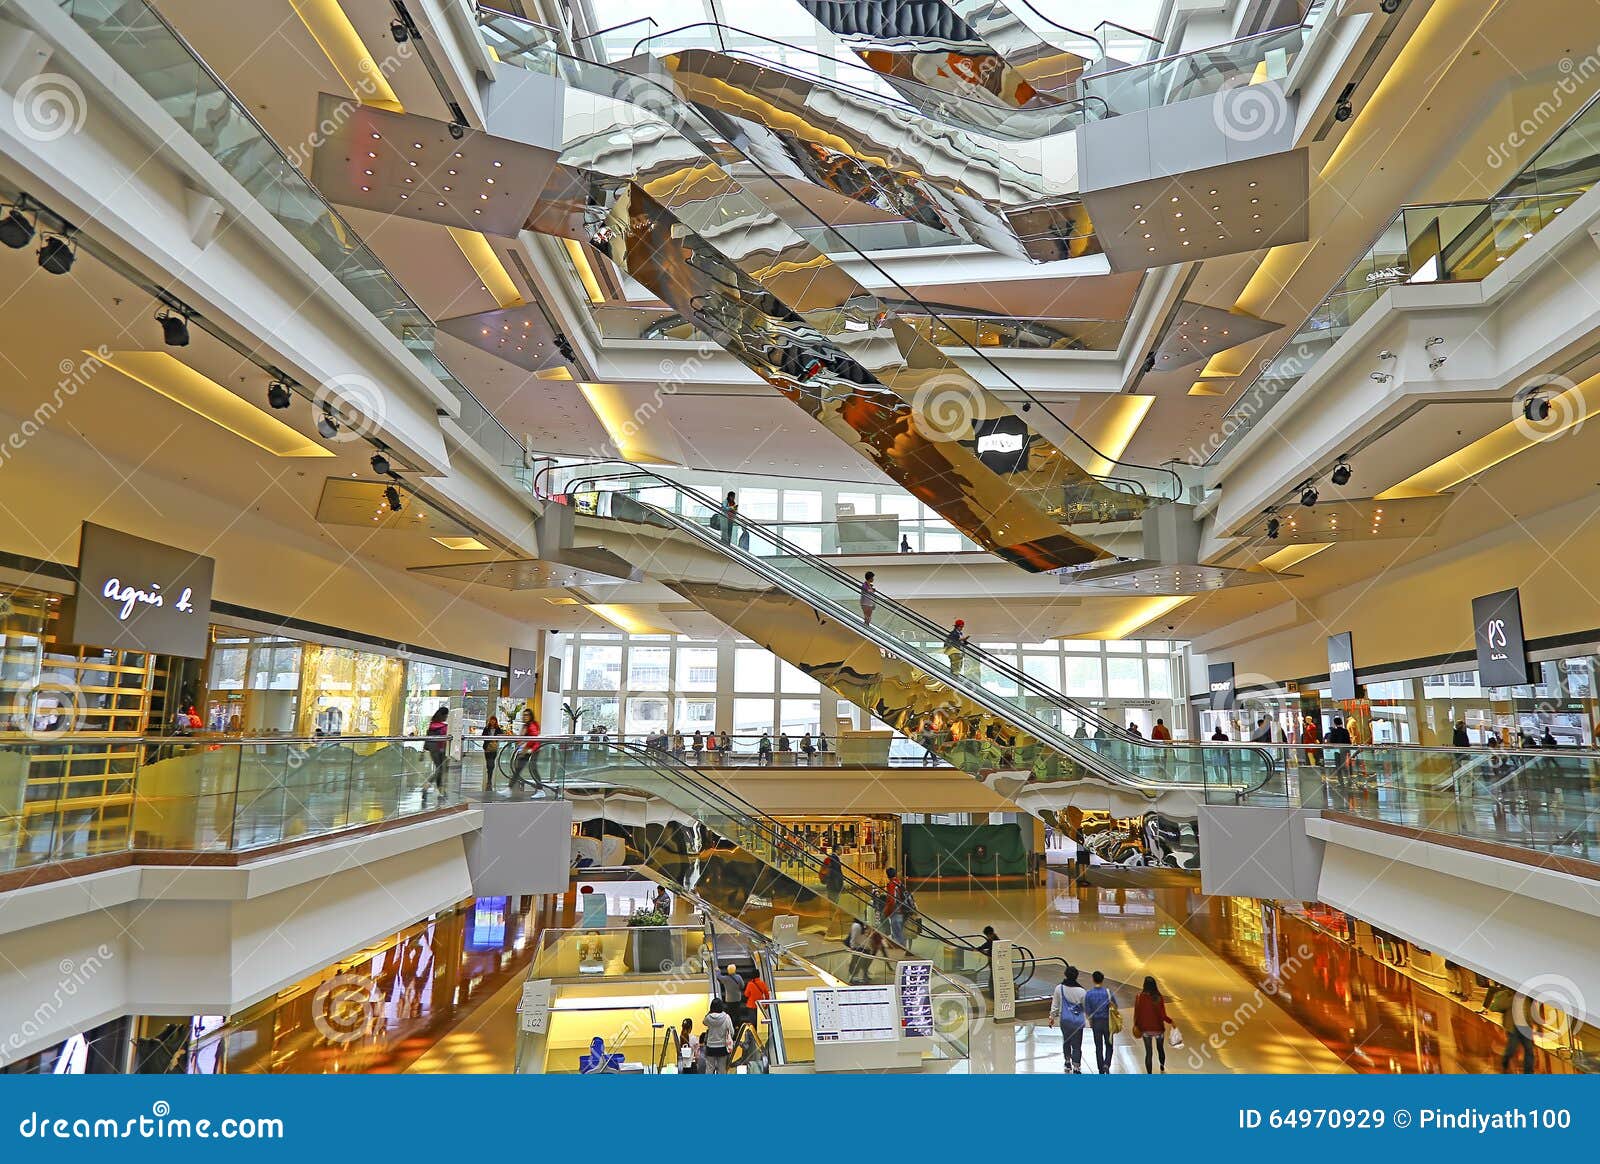 Festival Walk Shopping Mall, Hong Kong Editorial Stock Image - Image of ...